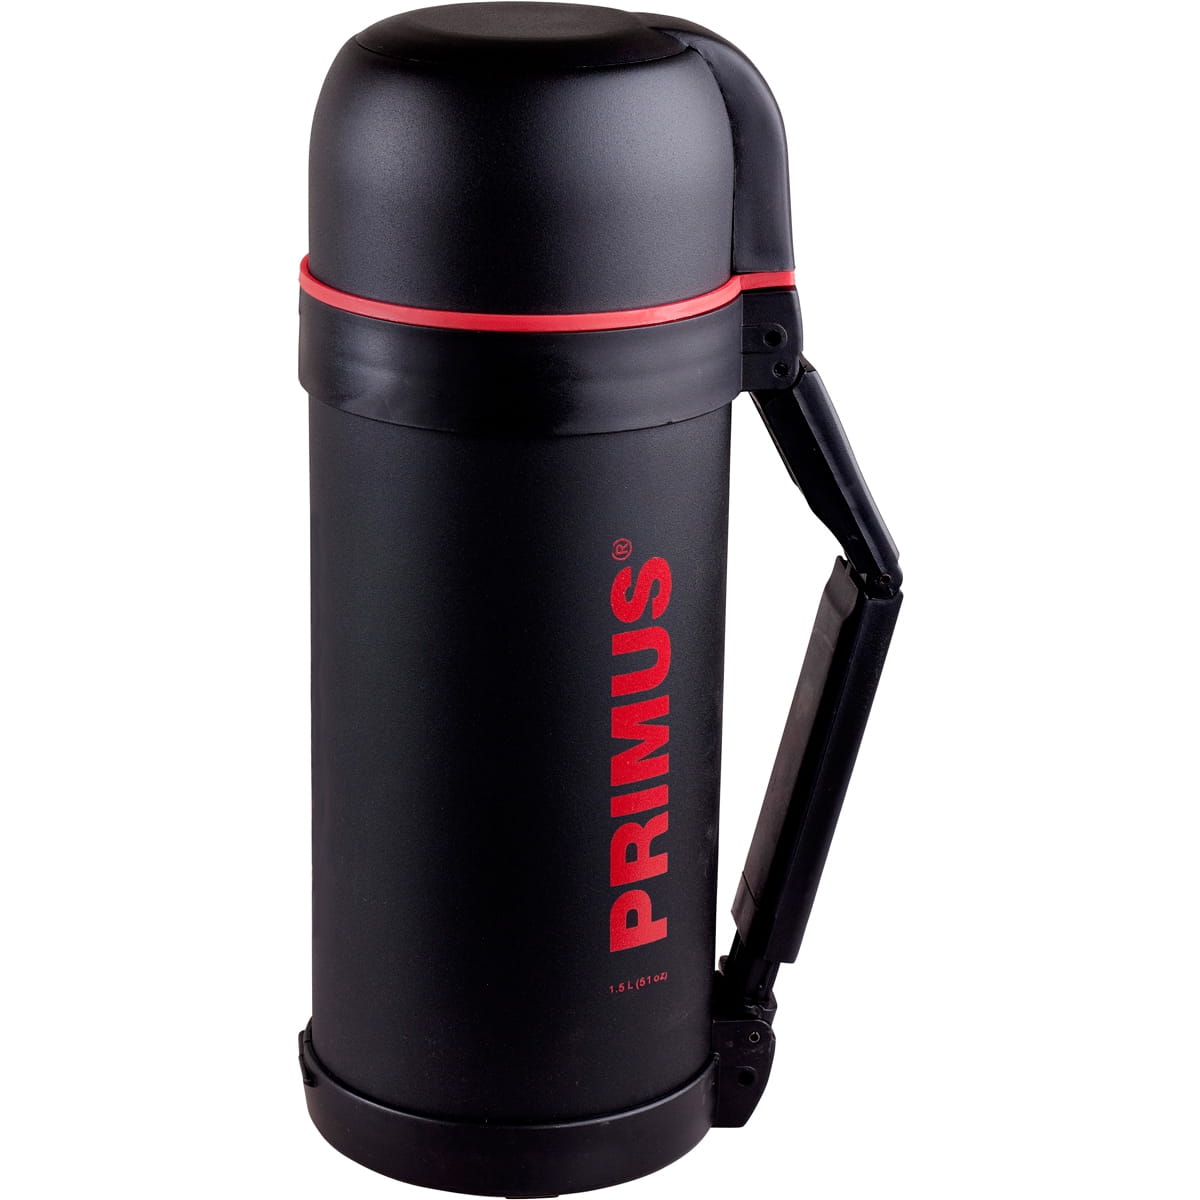 Primus Thermoflasche Food - 1,5 Liter online kaufen